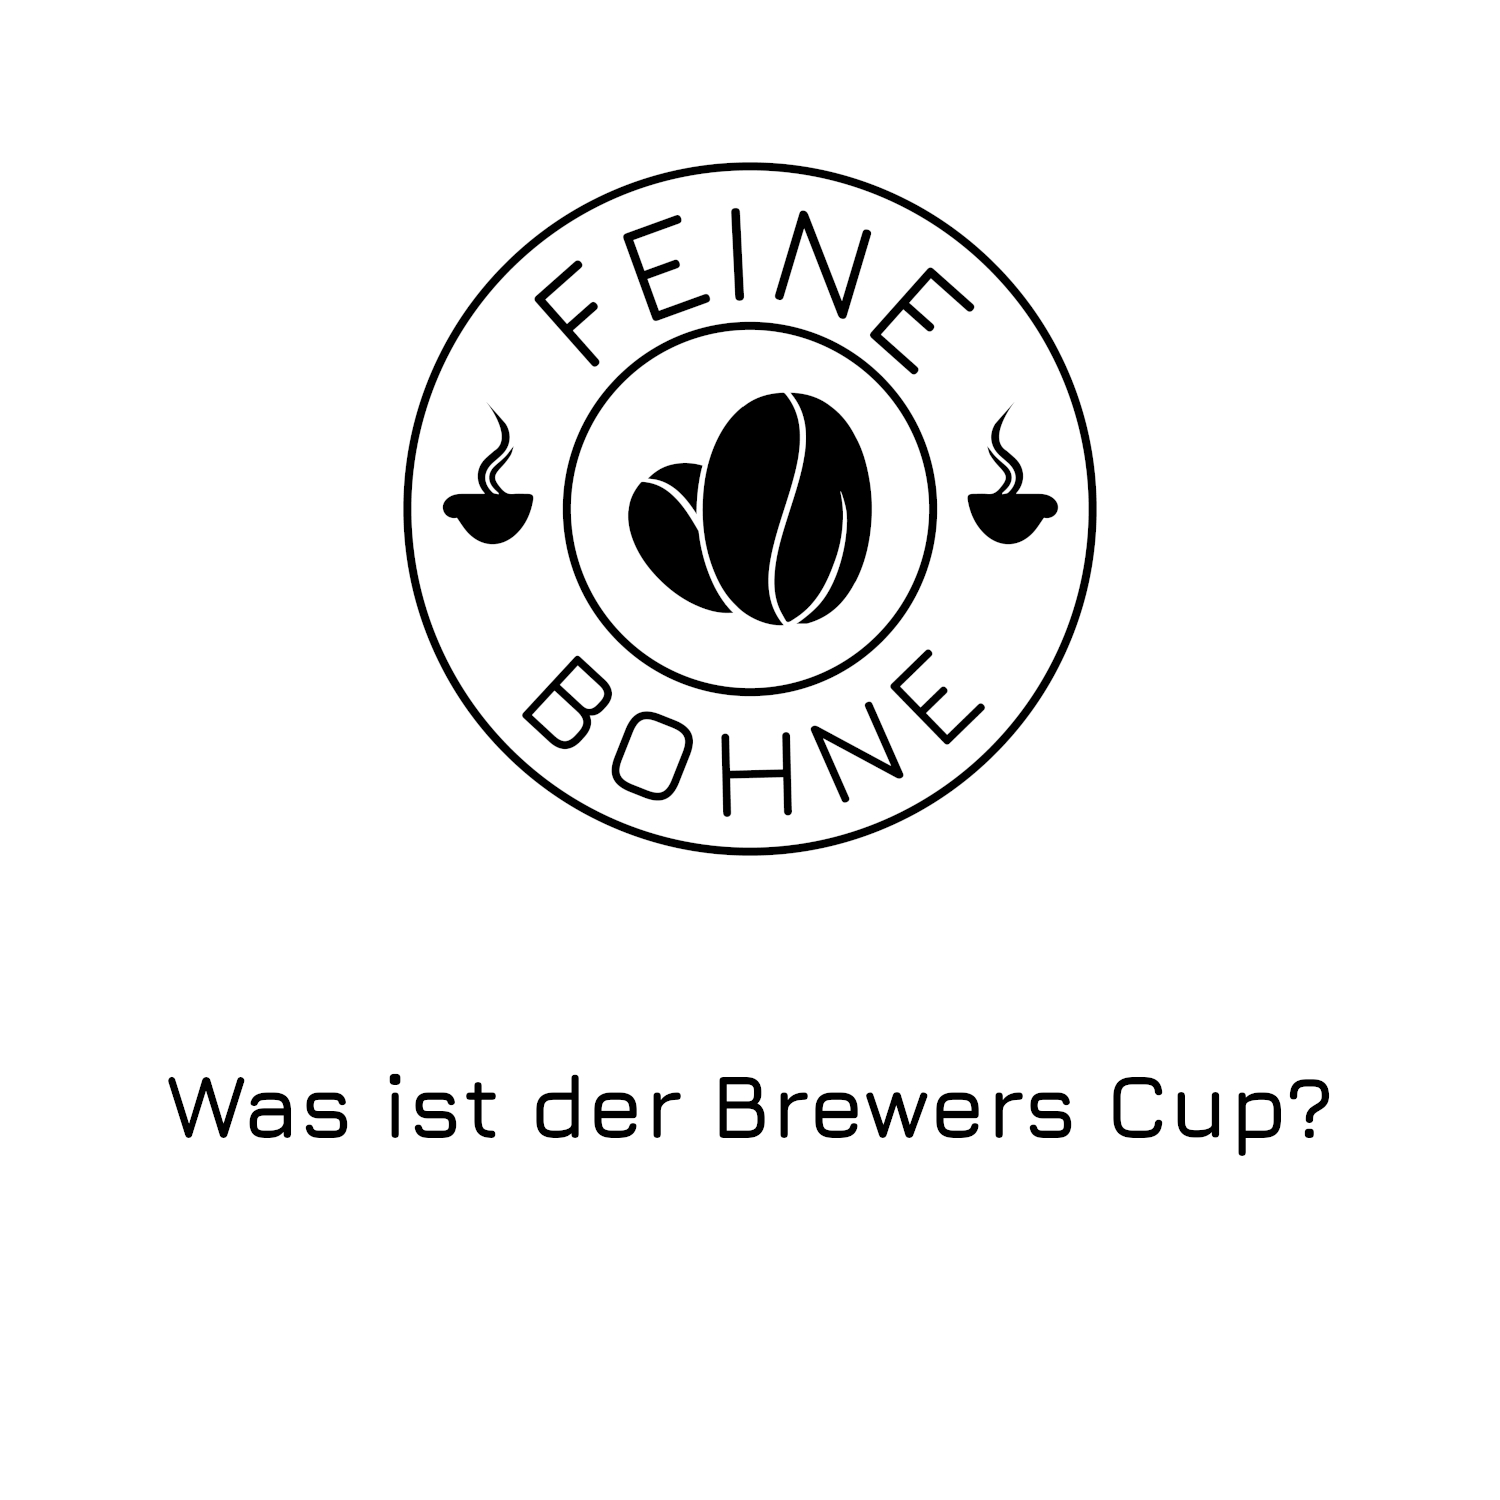 #37 Was ist der Brewers Cup? | Nikolaus von Süssmund